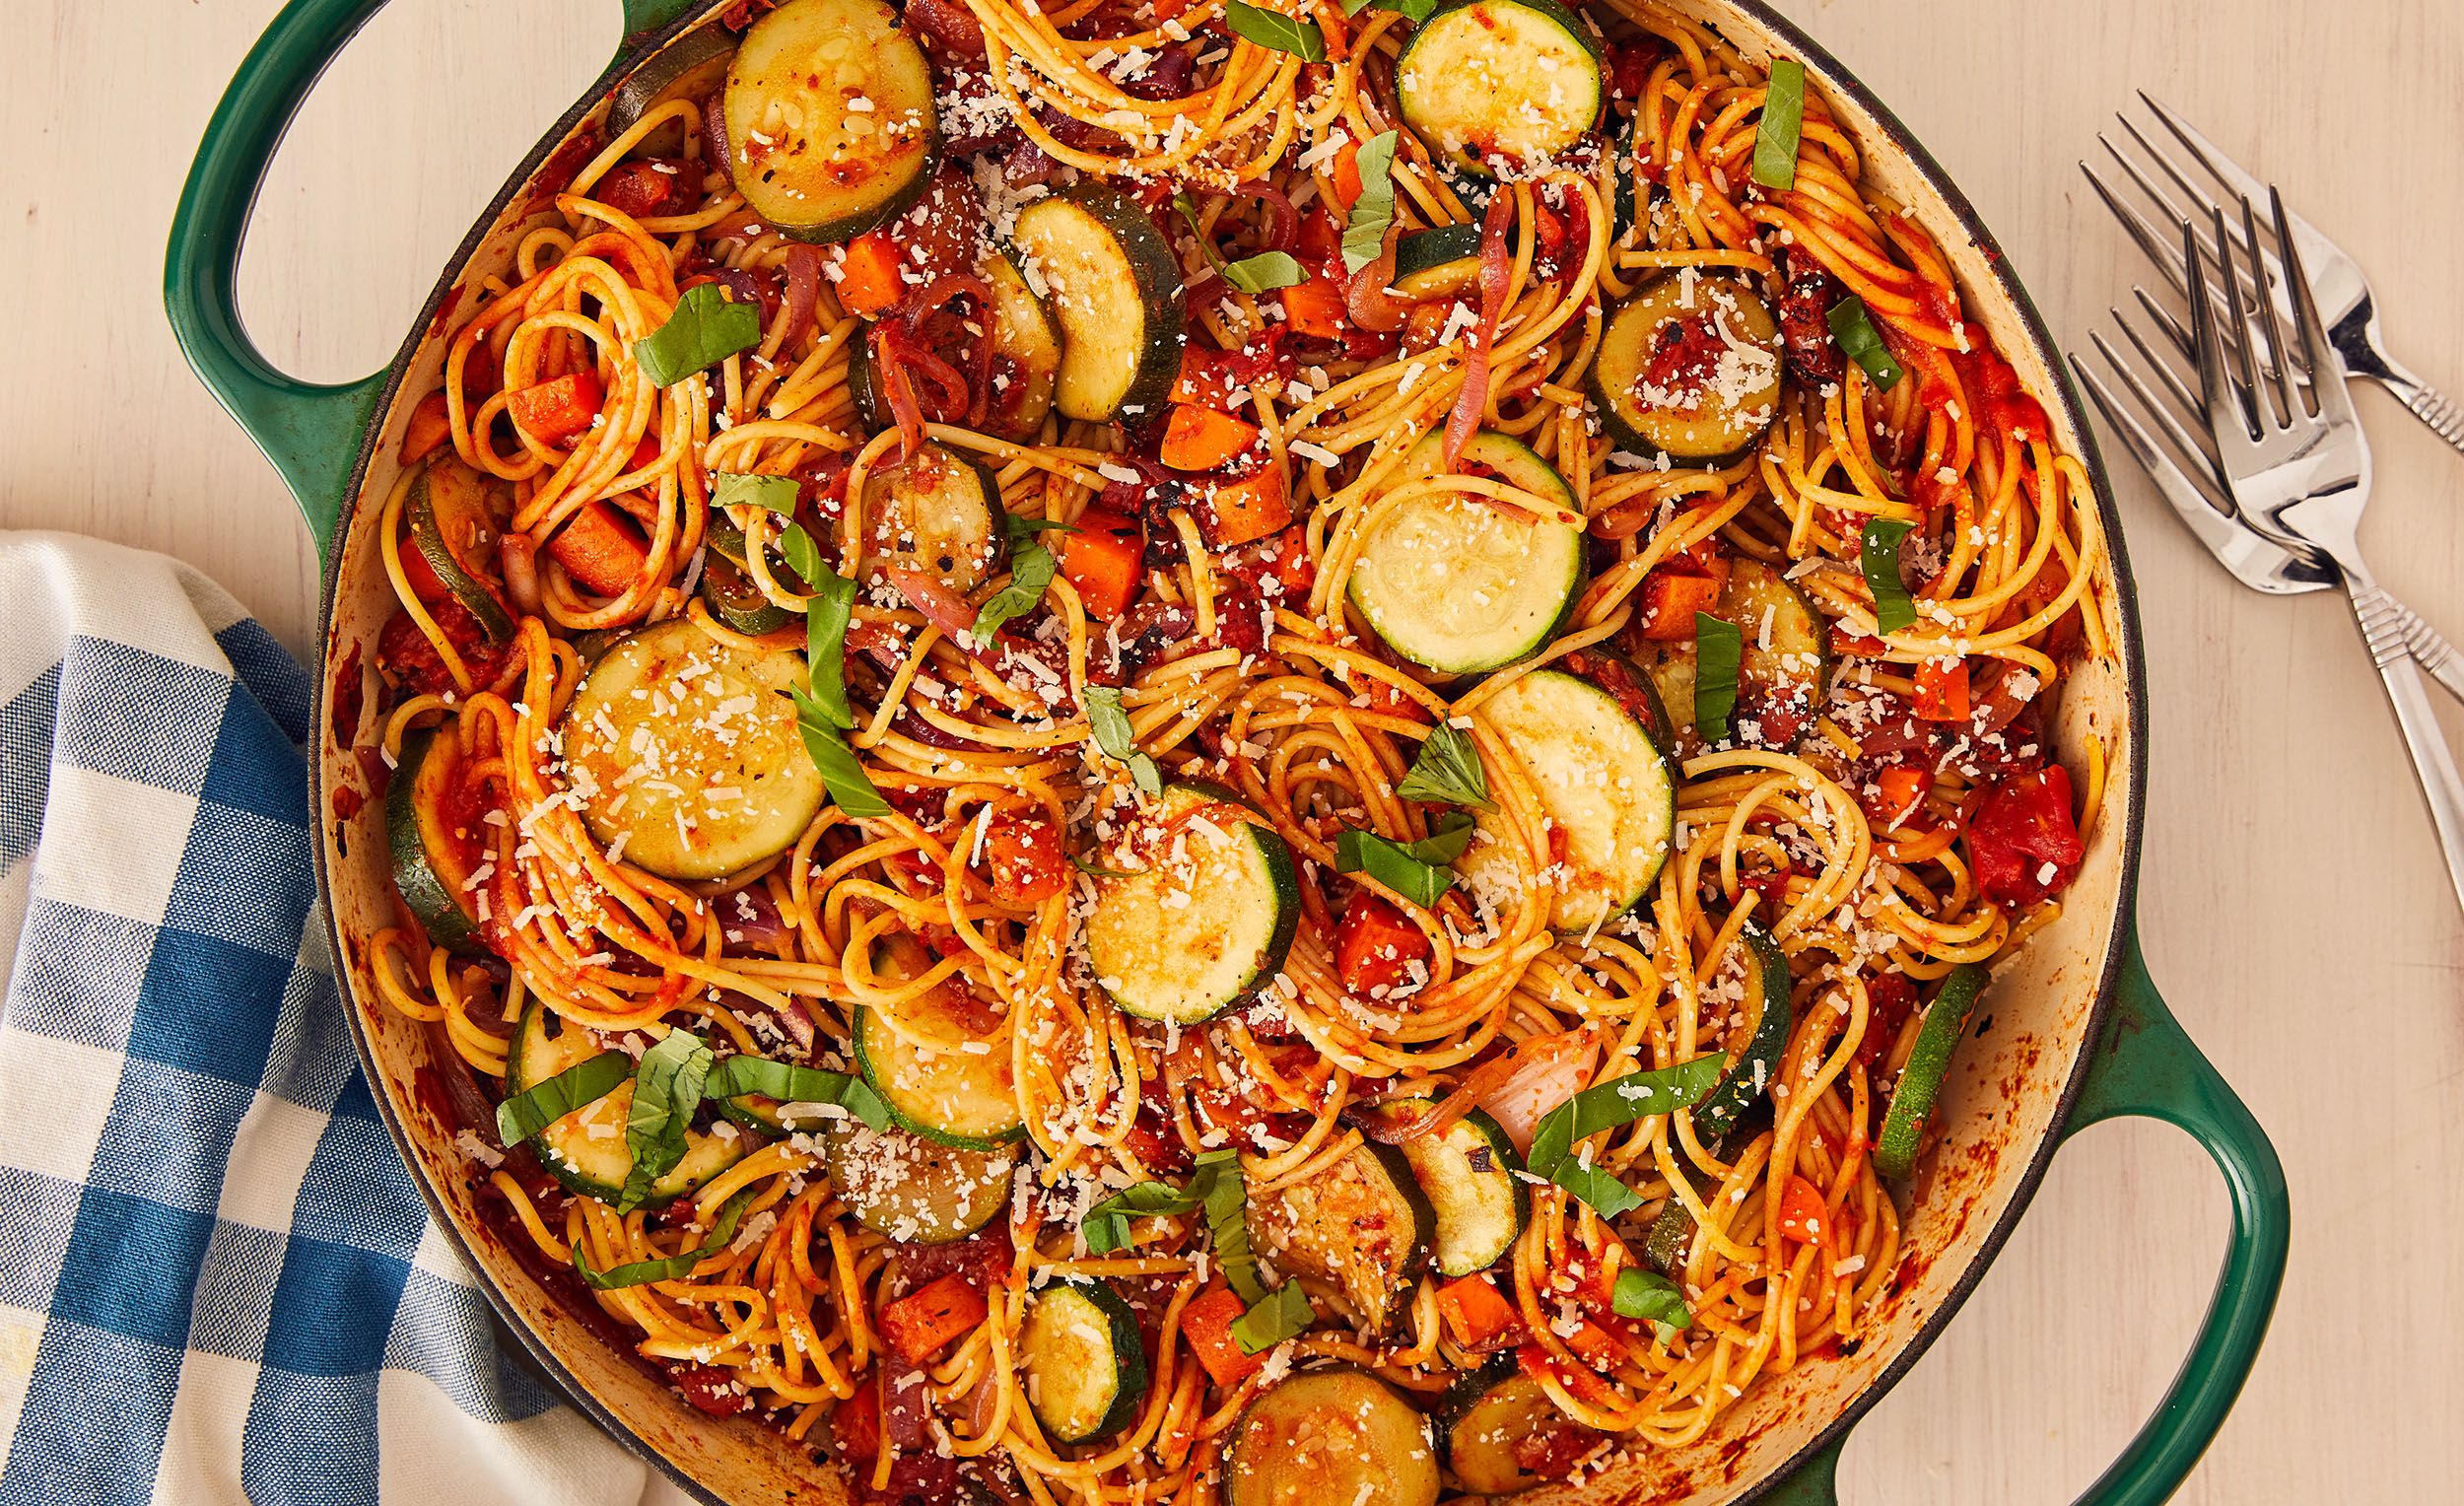 Best Vegetable Recipe to Make Vegetable Spaghetti